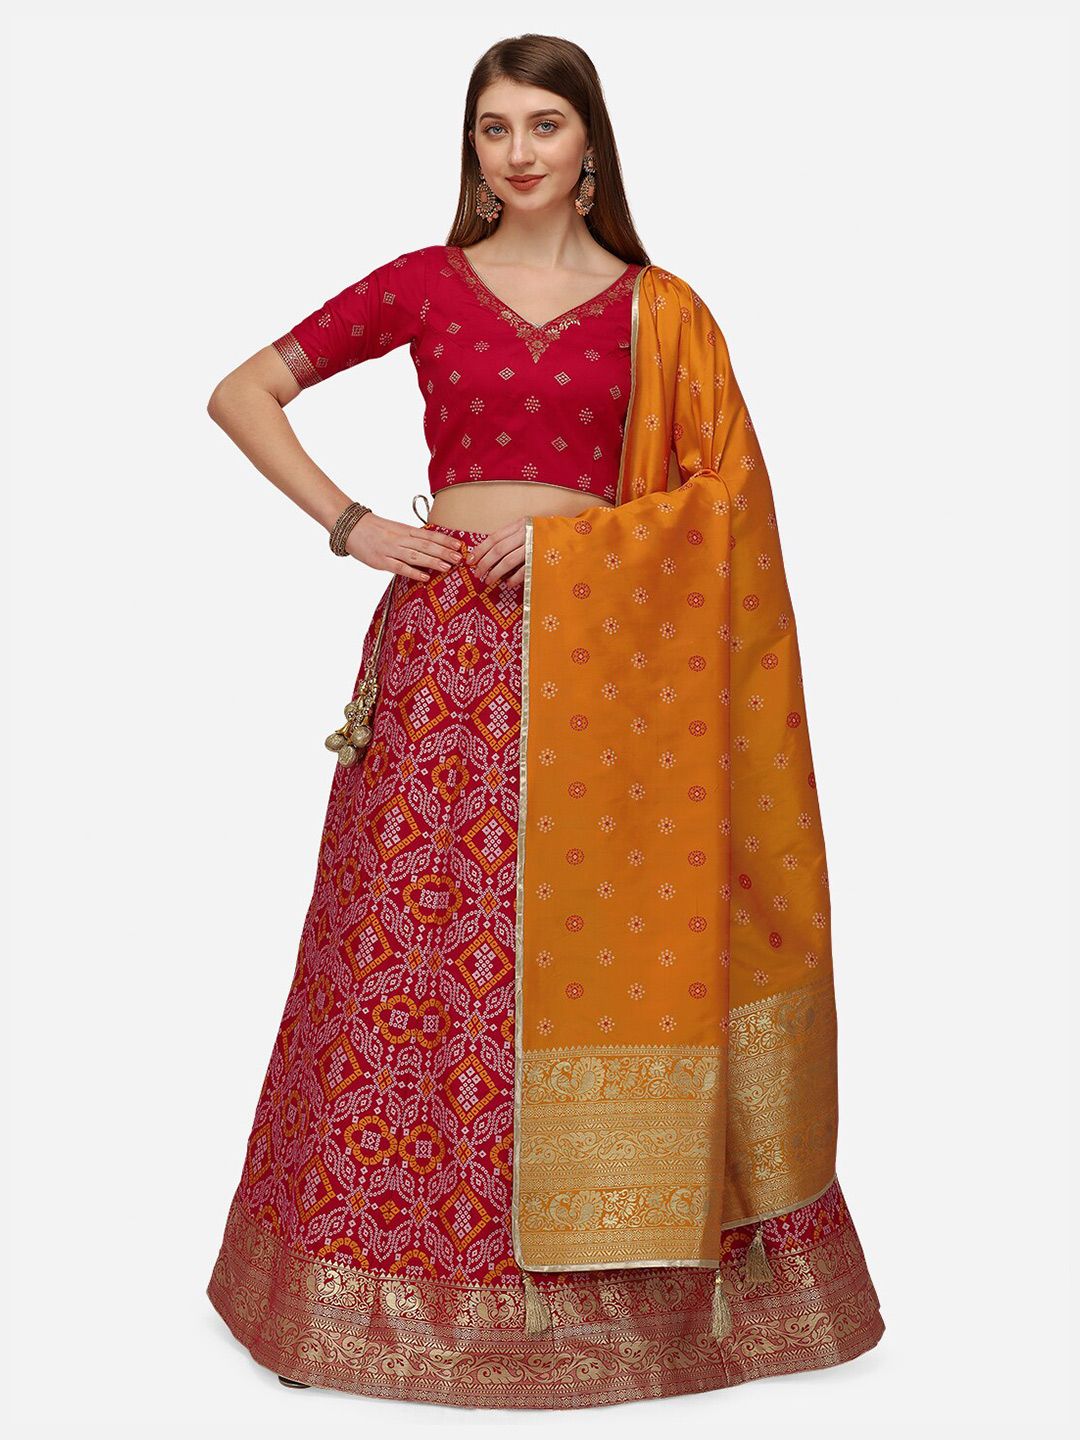 NAKKASHI Red & Orange Semi-Stitched Lehenga & Unstitched Blouse With Dupatta Price in India